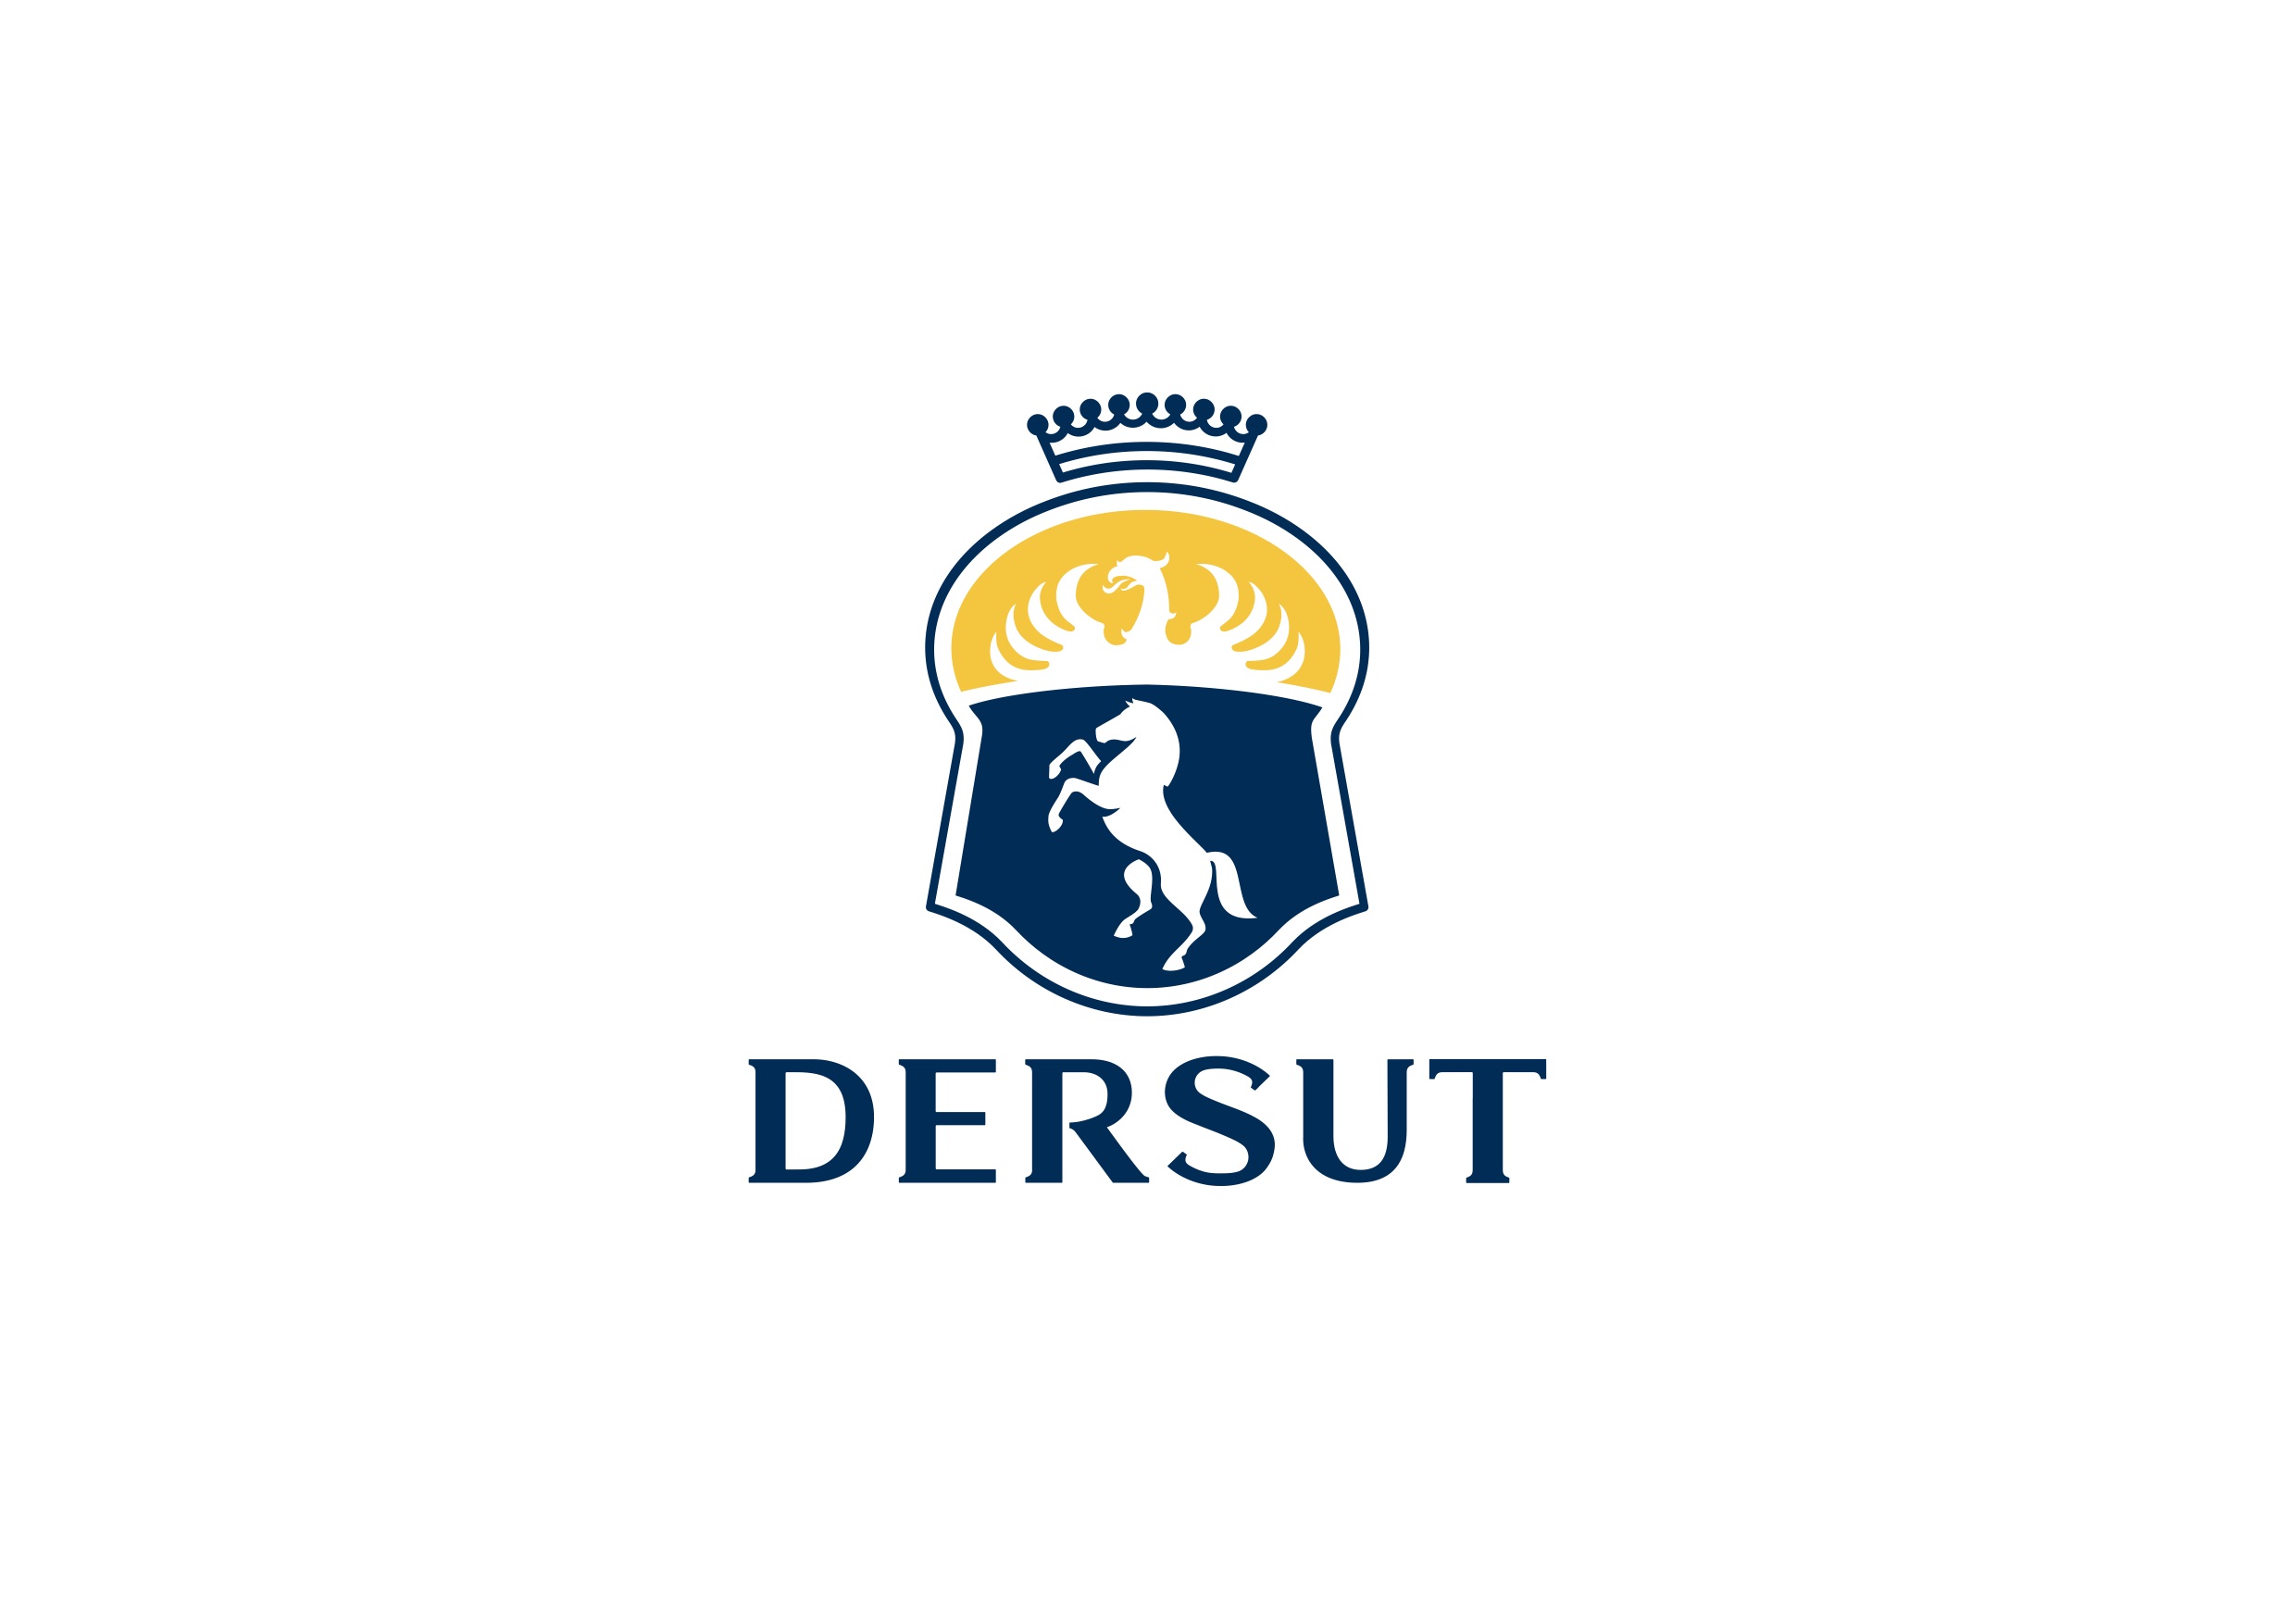 Il nuovo logo Dersut